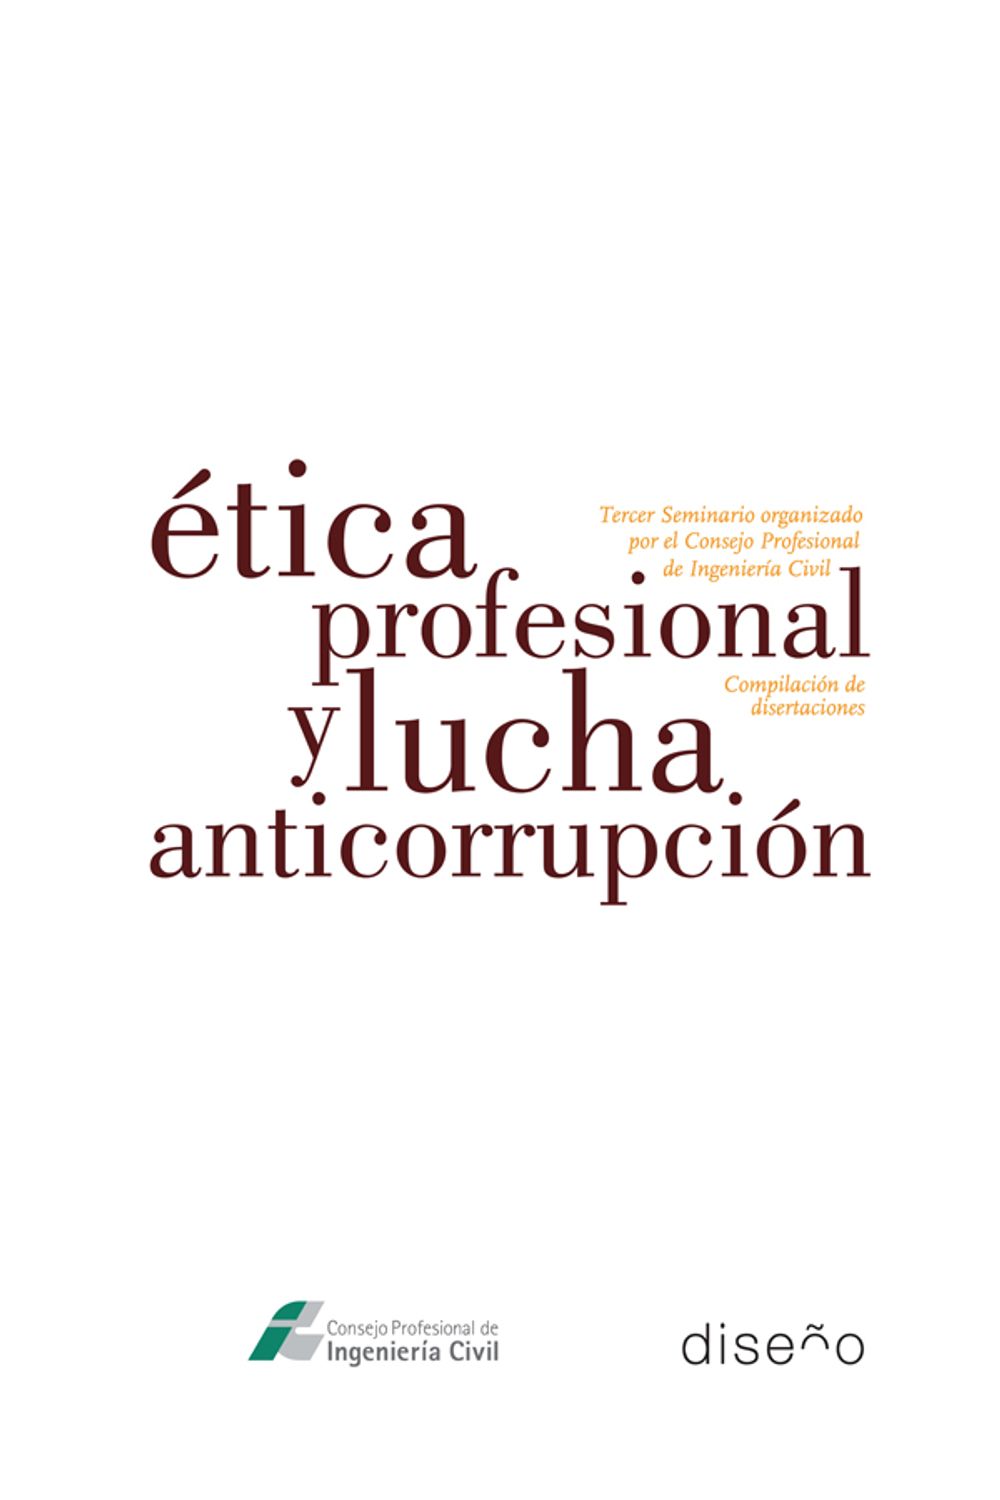 bm-etica-profesional-y-lucha-anticorrupcion-nobukodiseno-editorial-9789874000071